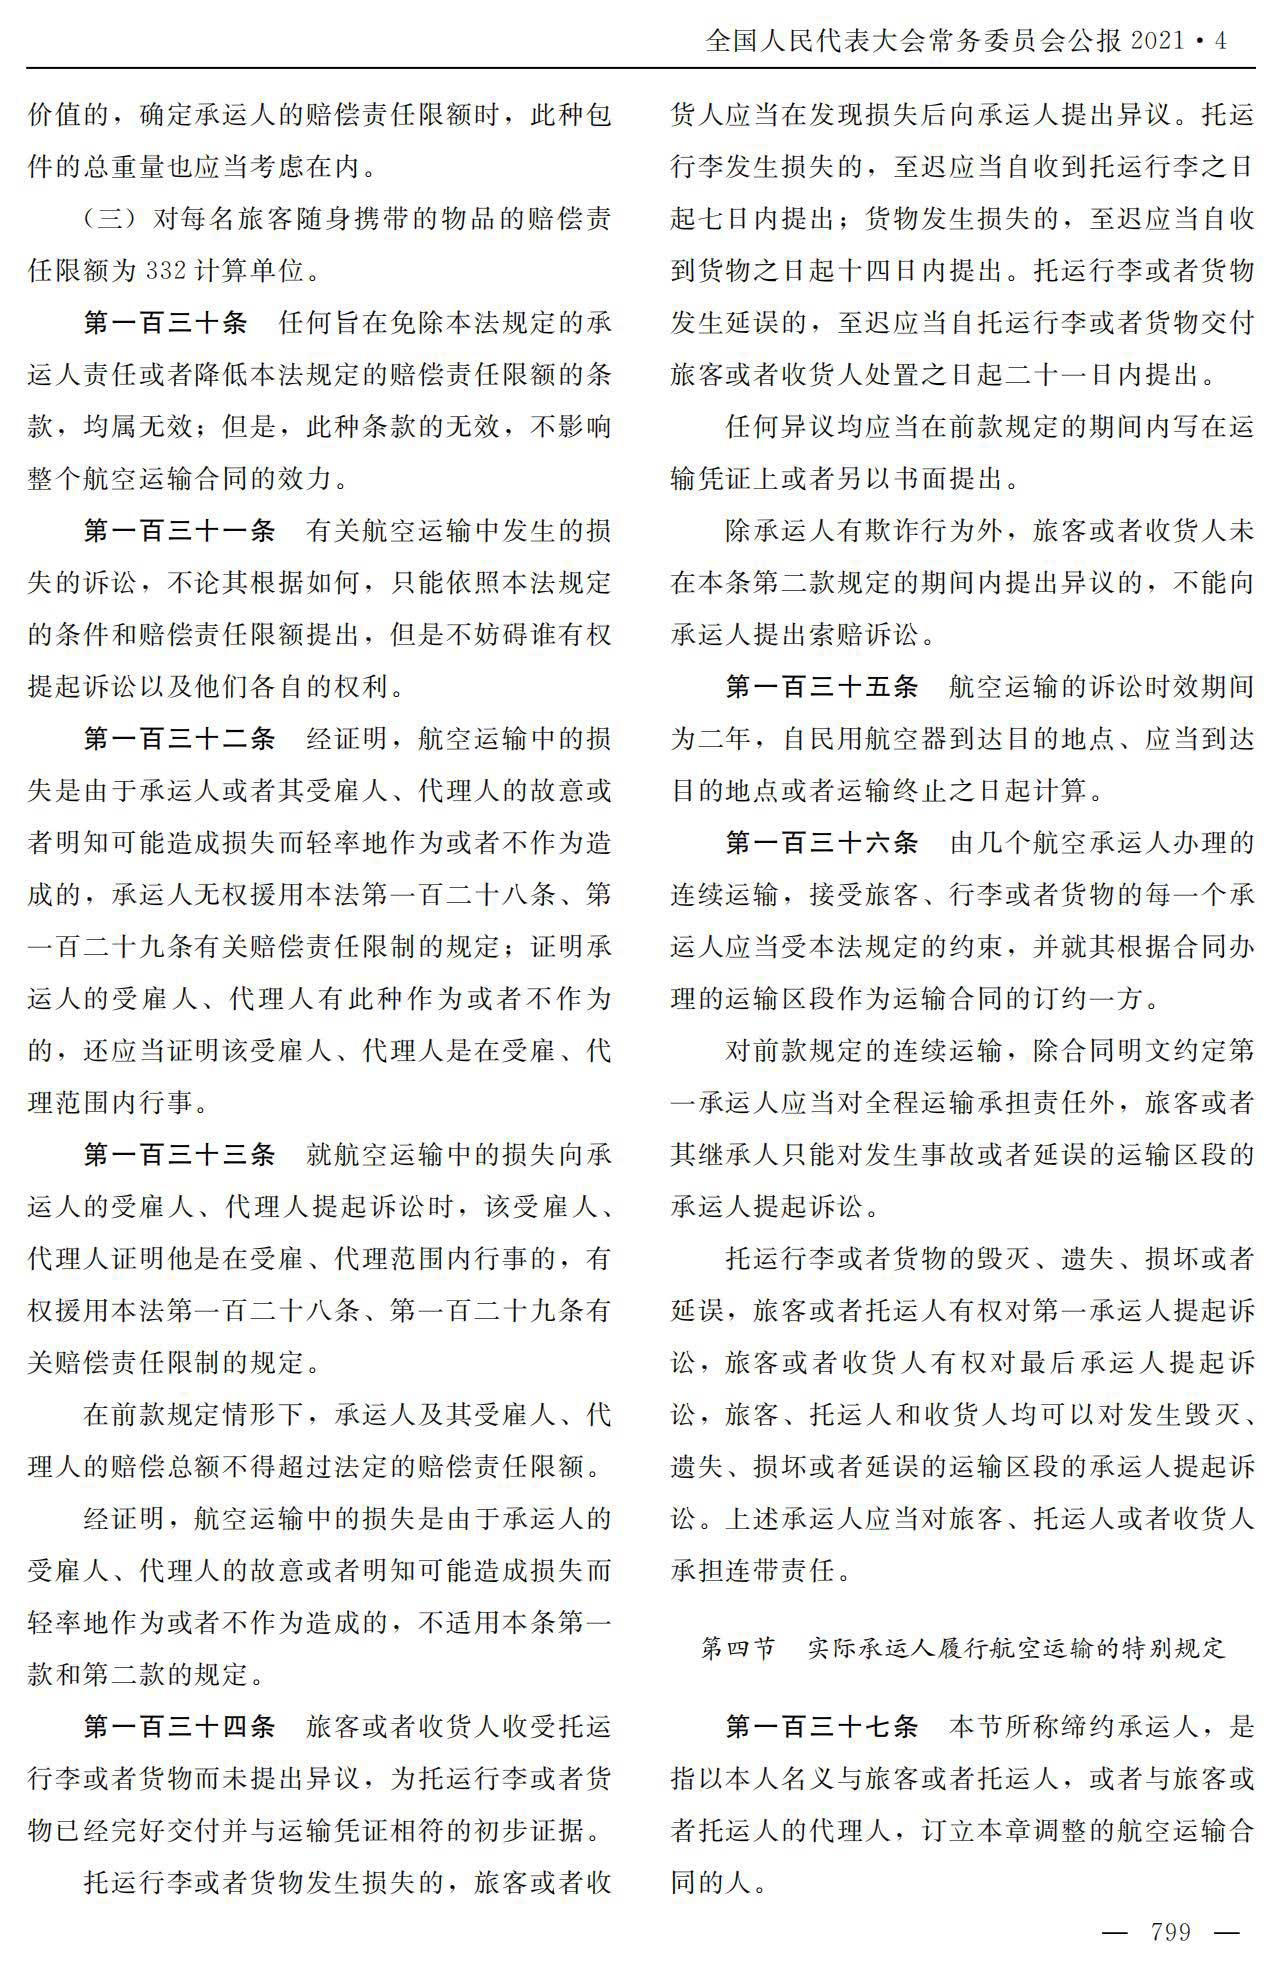 【法例法规】中华人民共和国民用航空法